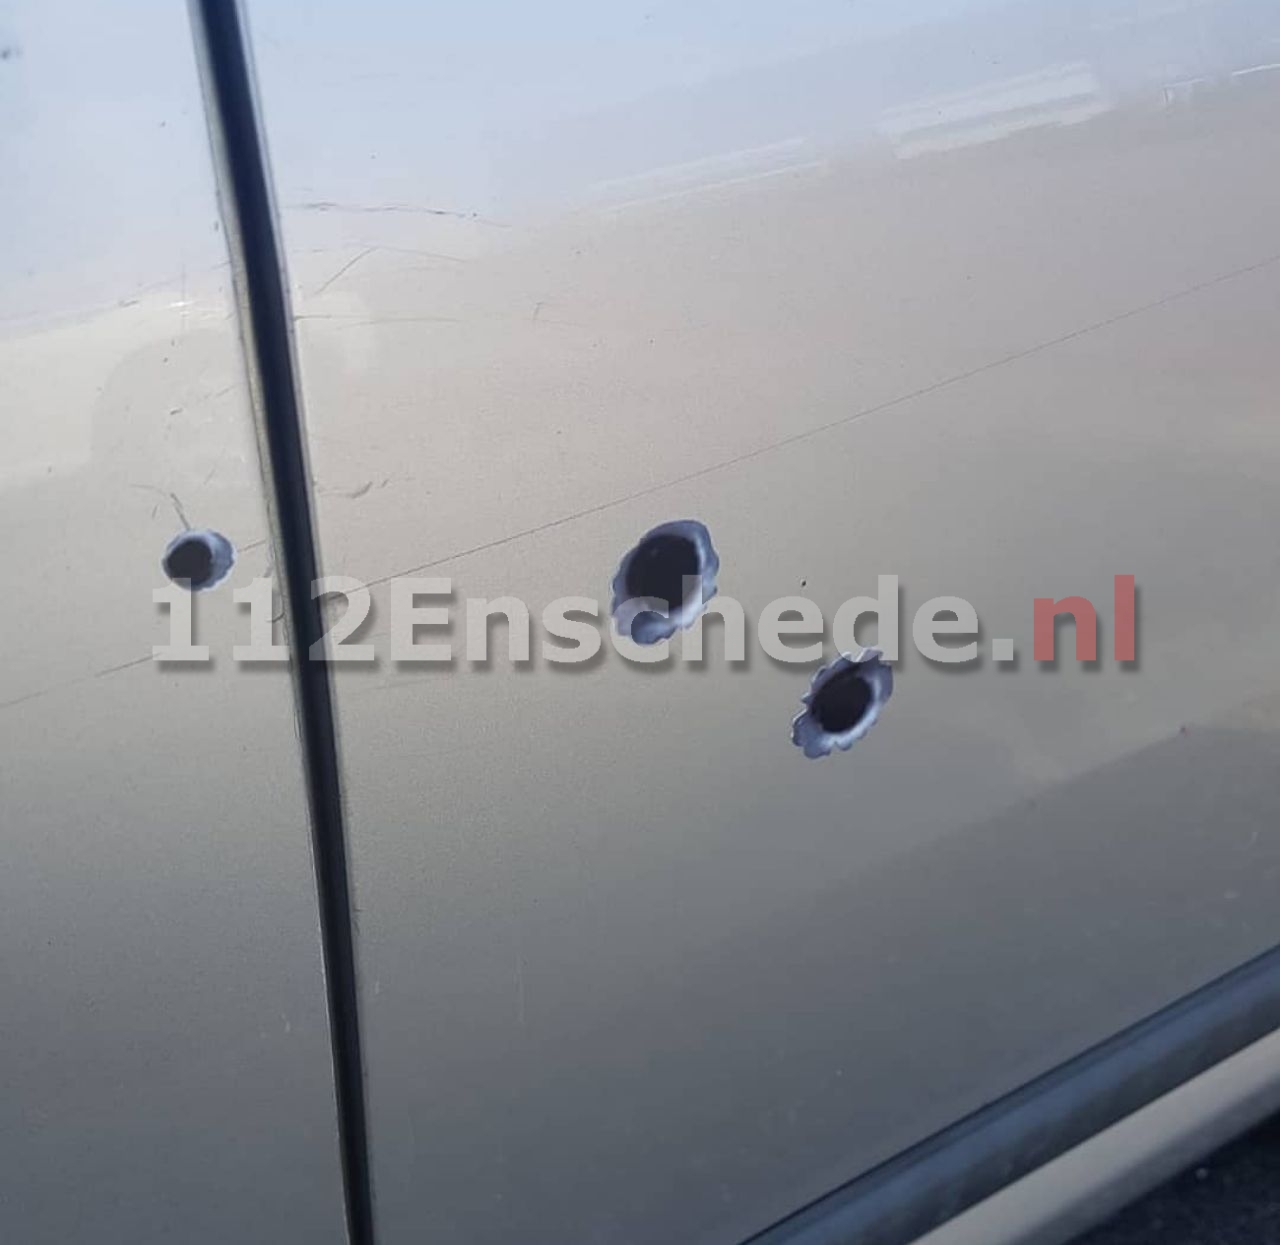 Politie rukt uit voor “kogelgaten” in auto Enschede